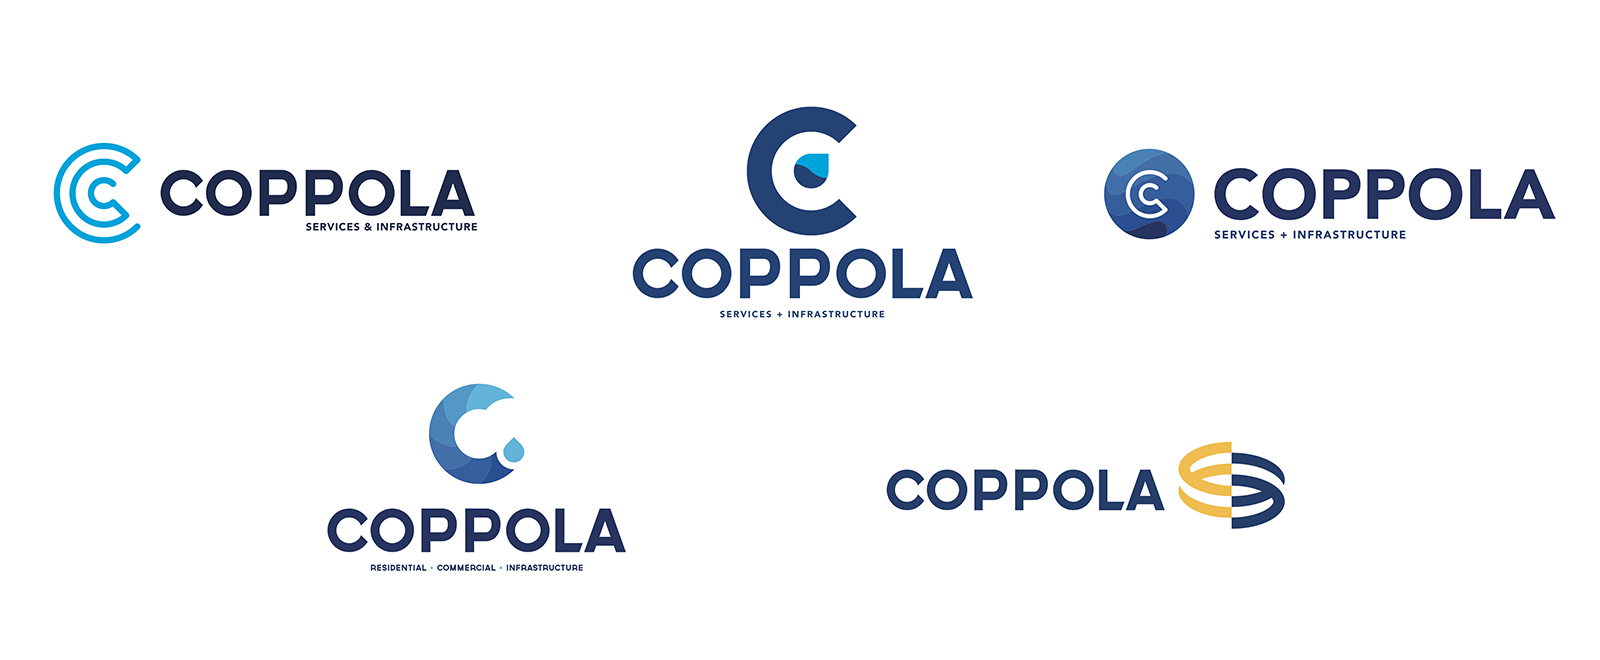 Coppola Brand Identity Concepts